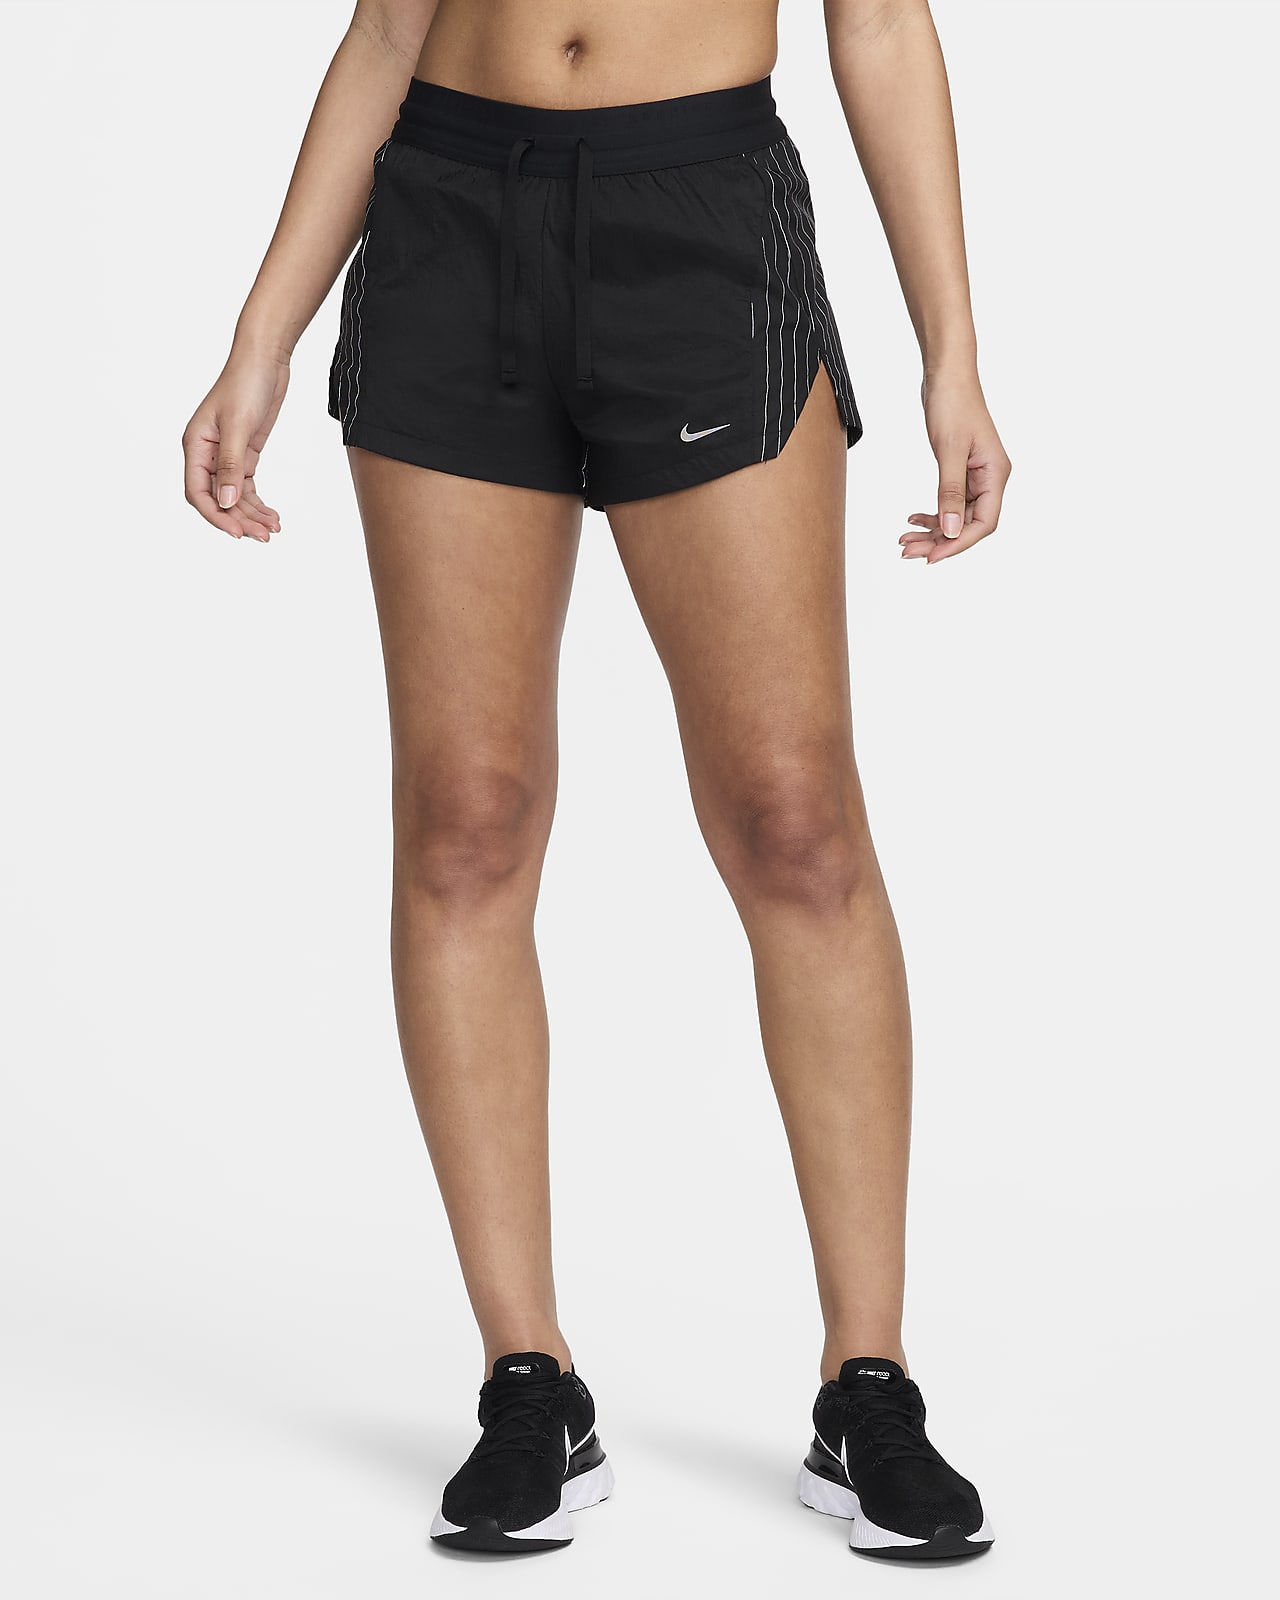 Dámské 8cm běžecké kraťasy Nike Running Division se středně vysokým pasem a všitými kalhotkami